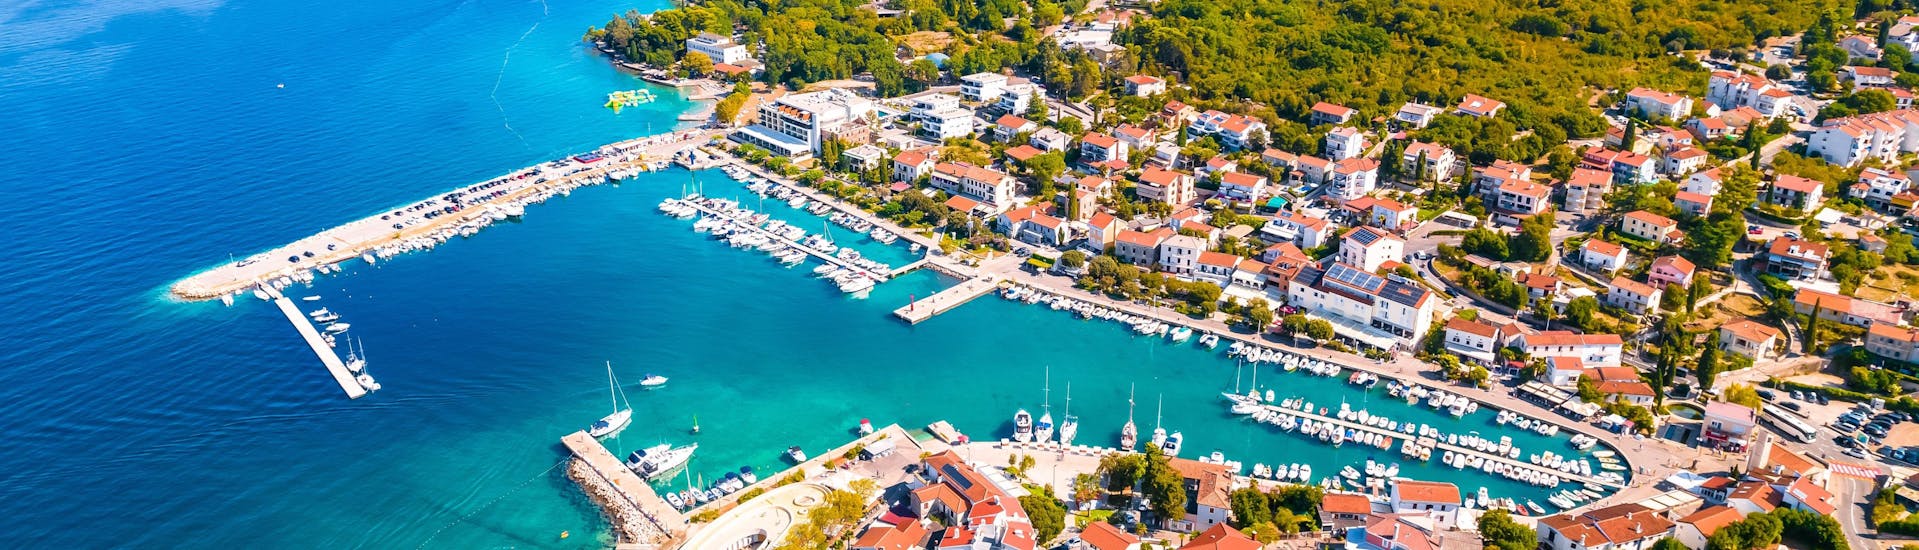 Blick aus der Luft auf den Hafen von Malinska in Kroatien.